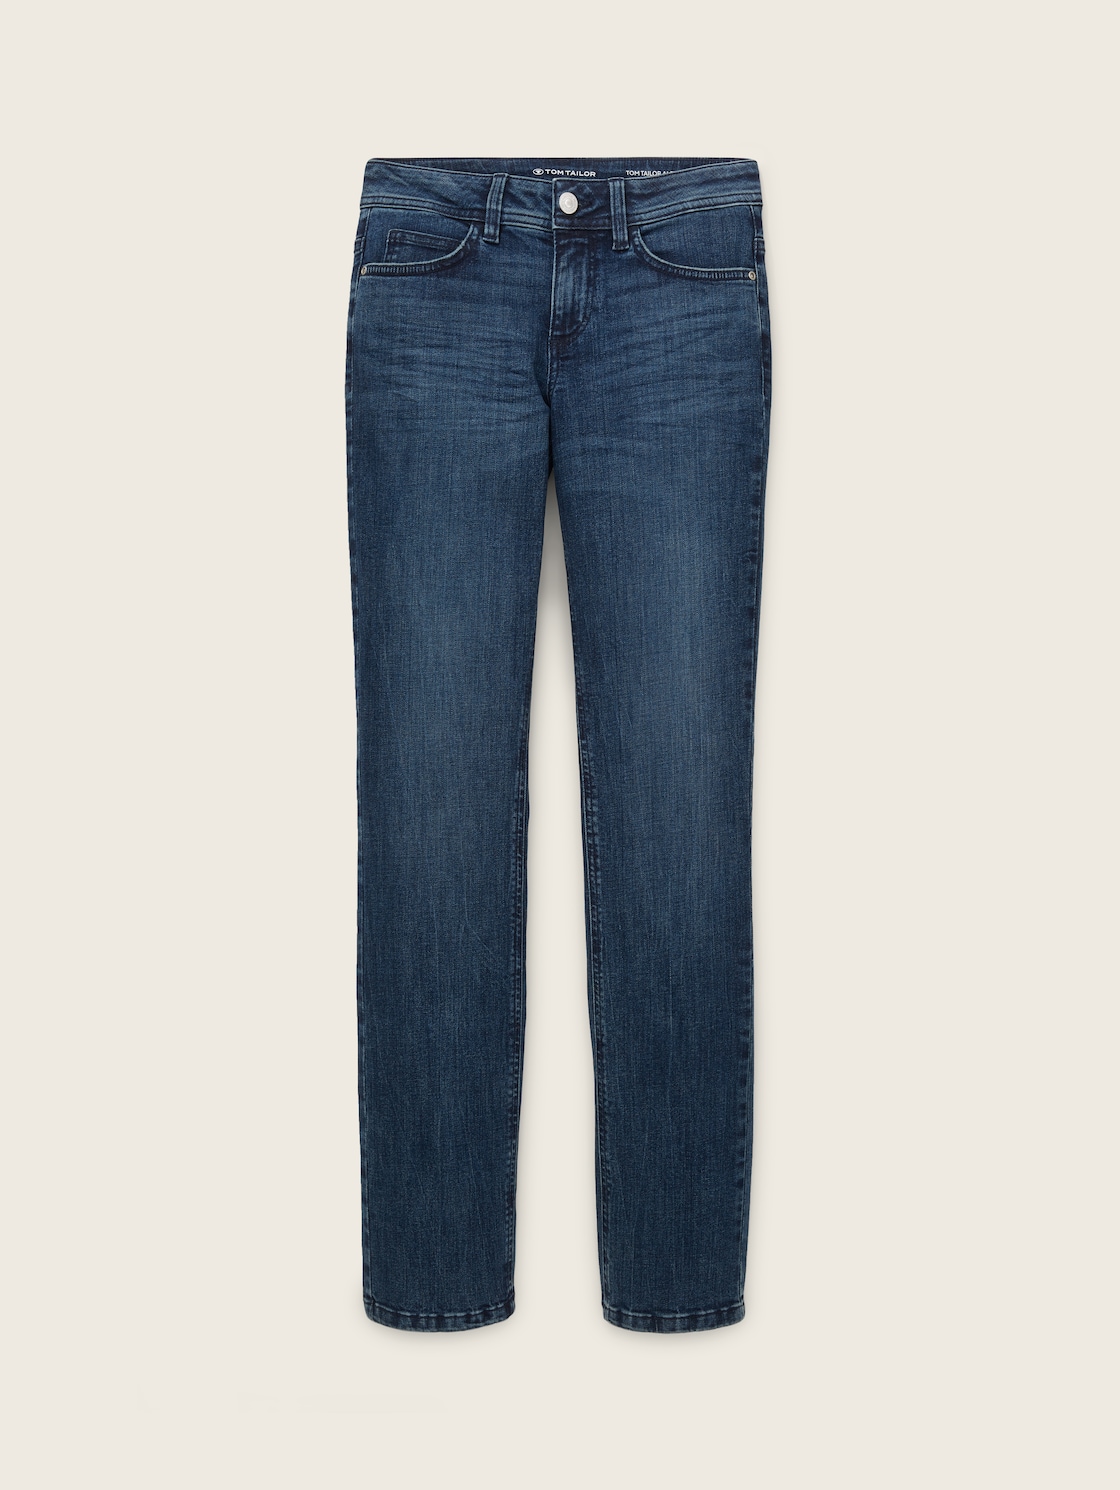 TOM TAILOR Damen Alexa Straight Jeans mit Bio-Baumwolle, blau, Gr. 31/32 von Tom Tailor